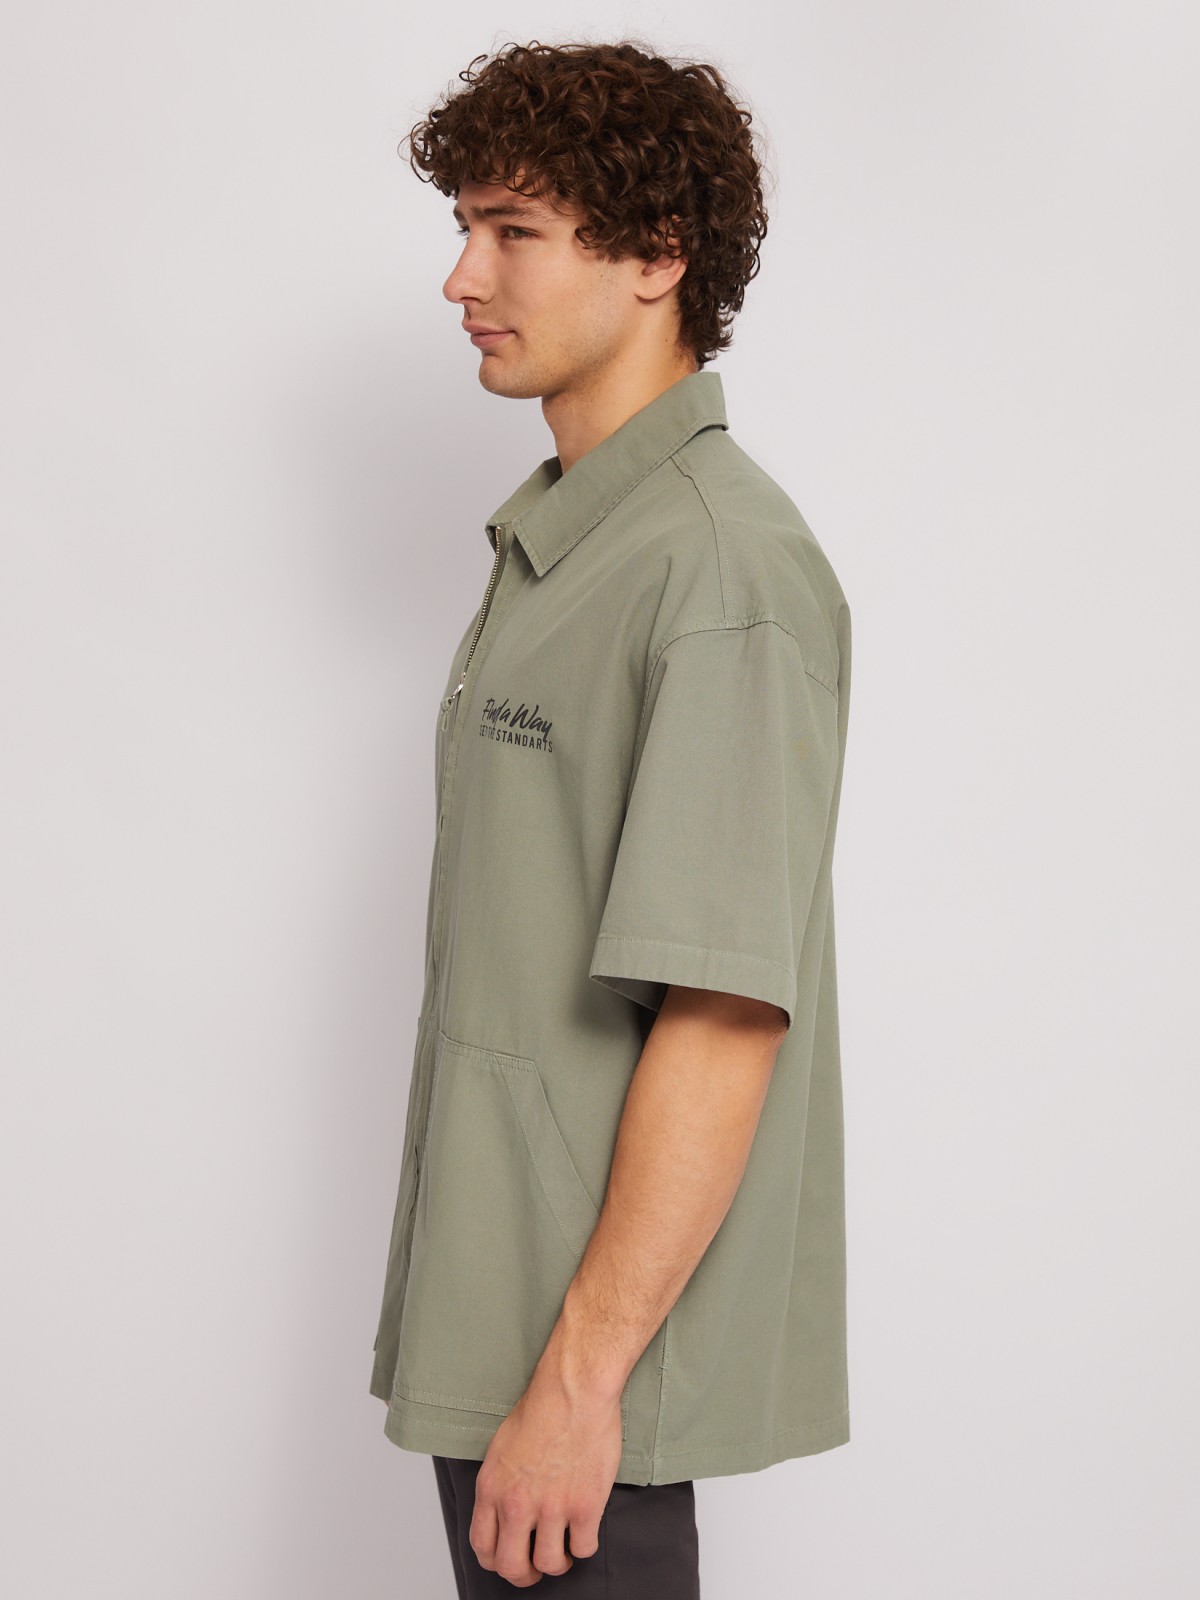 Куртка-рубашка из хлопка на молнии с коротким рукавом zolla 014222216131, цвет хаки, размер L - фото 3